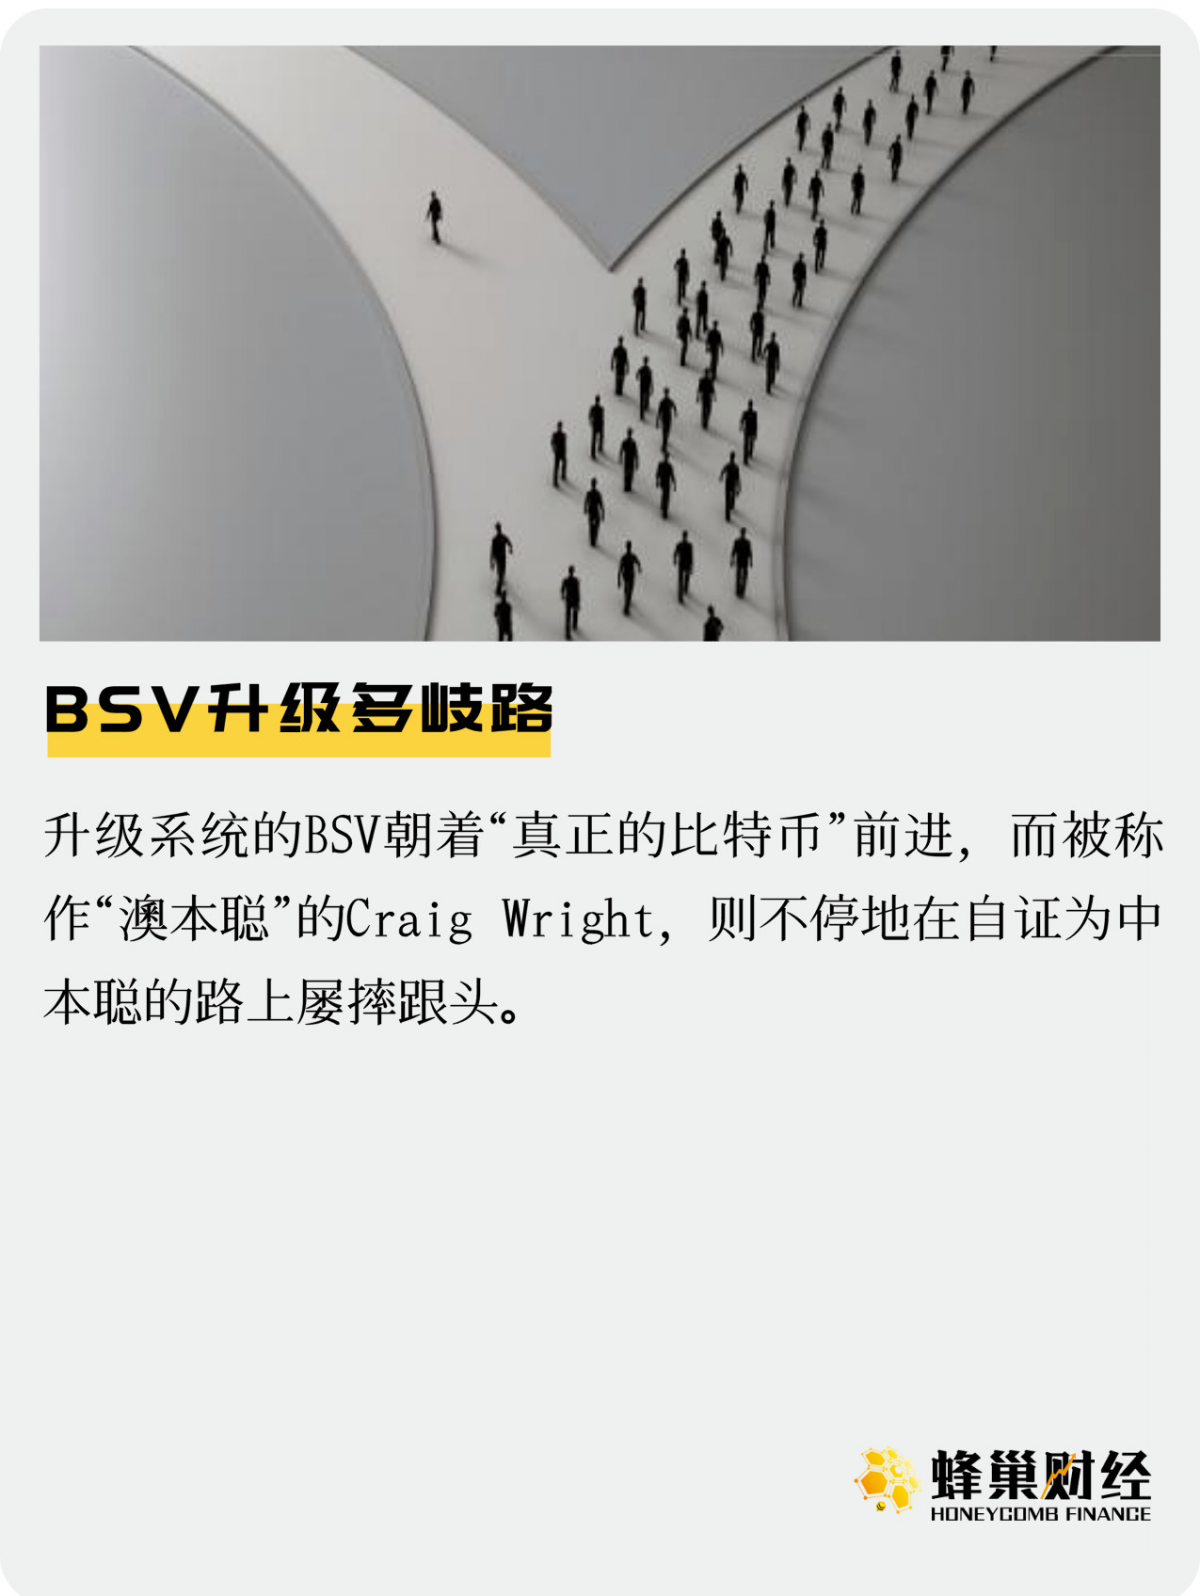 比特币创世纪区块地址 BSV 升级多路径